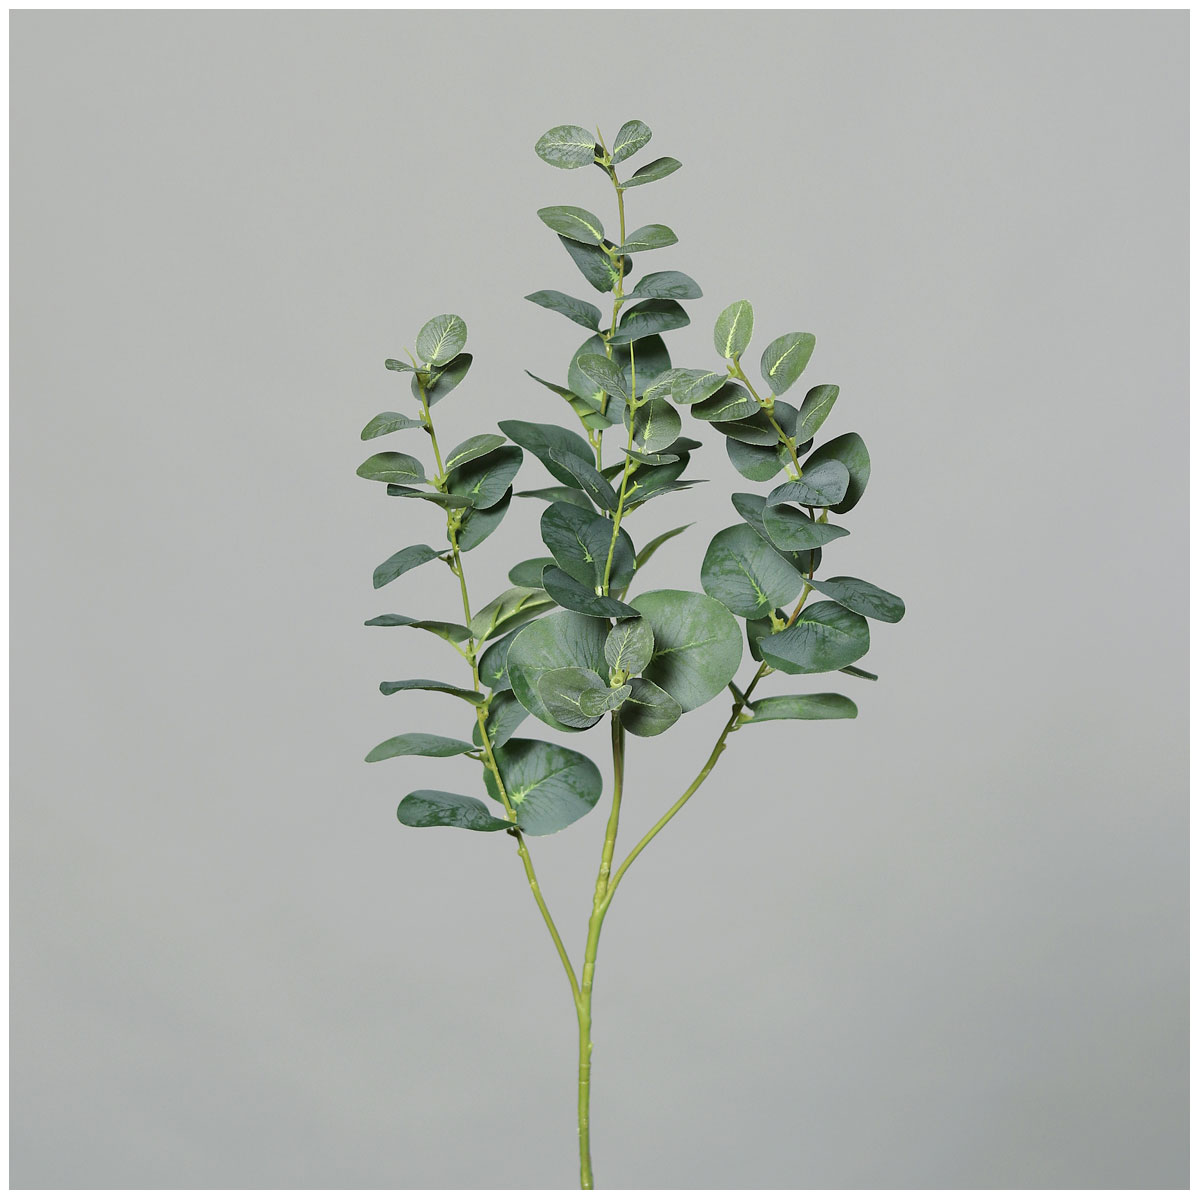 Eukalyptuszweig 92 cm green | 522229